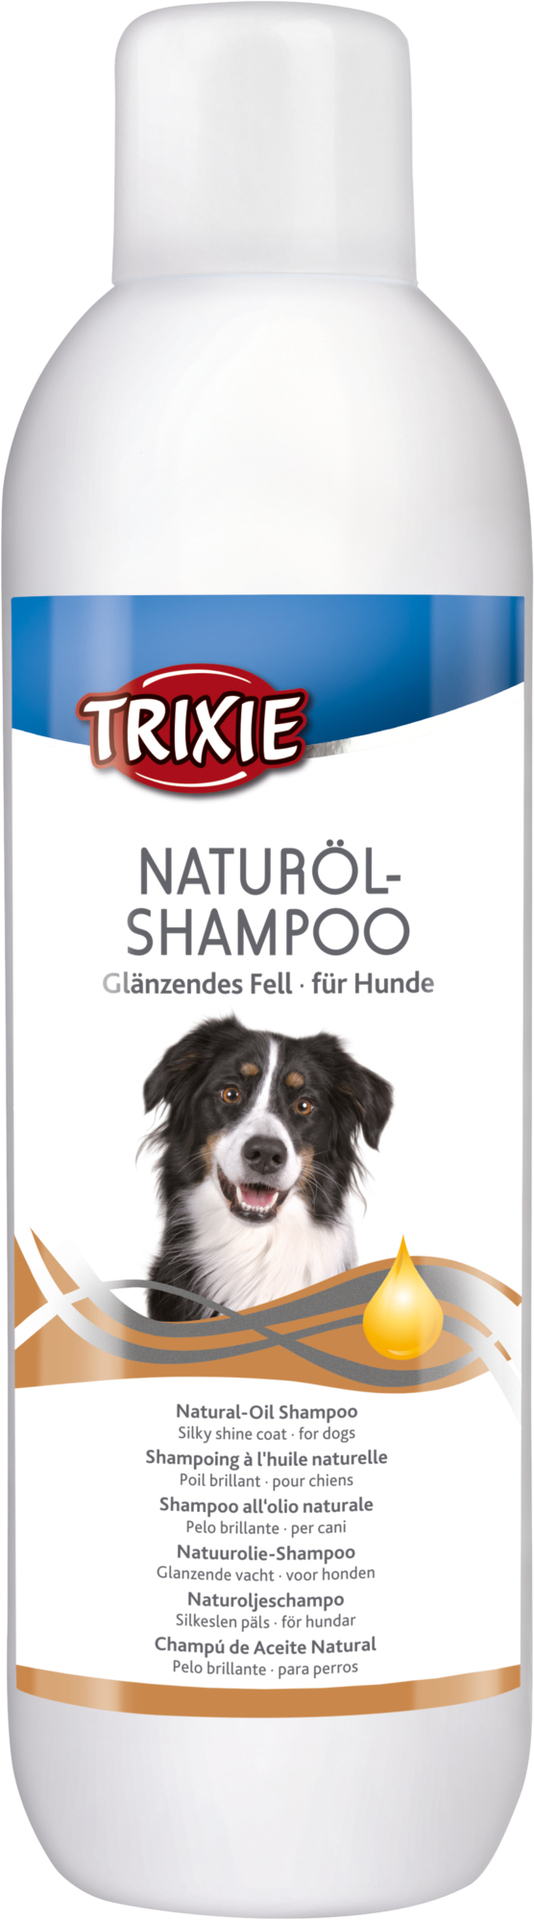 Naturöl-Shampoo